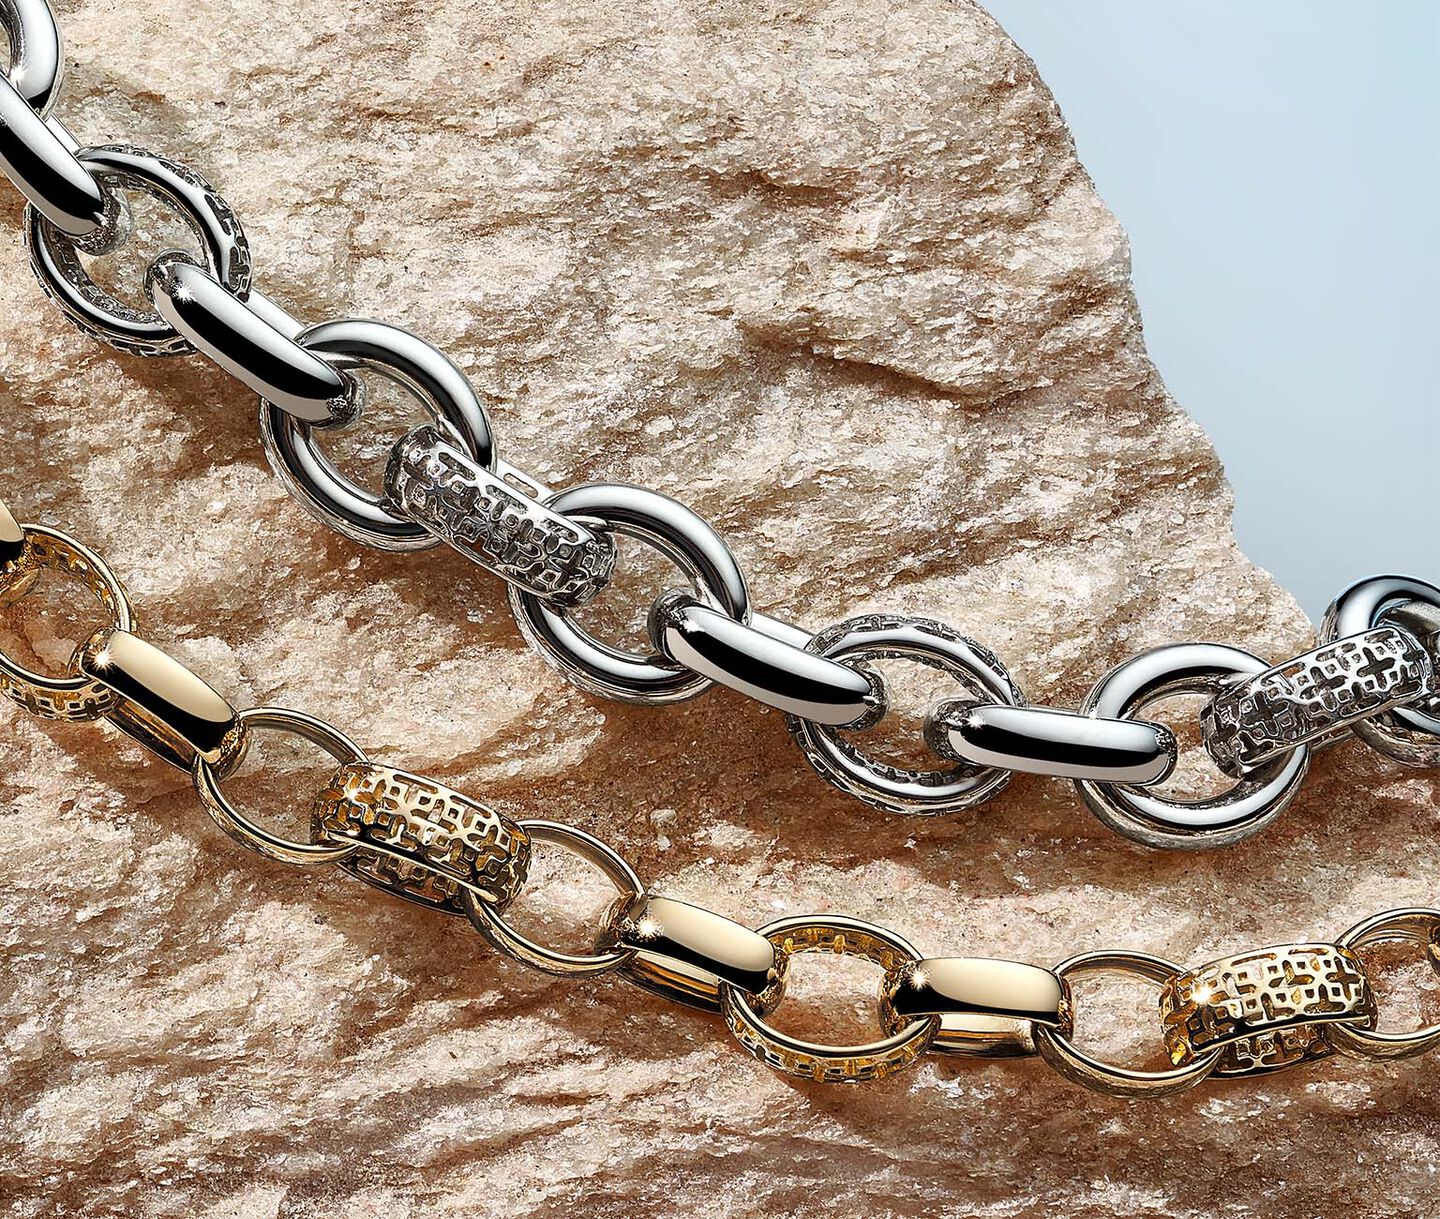 Silver and gold Birks Muse bracelets on a rock.